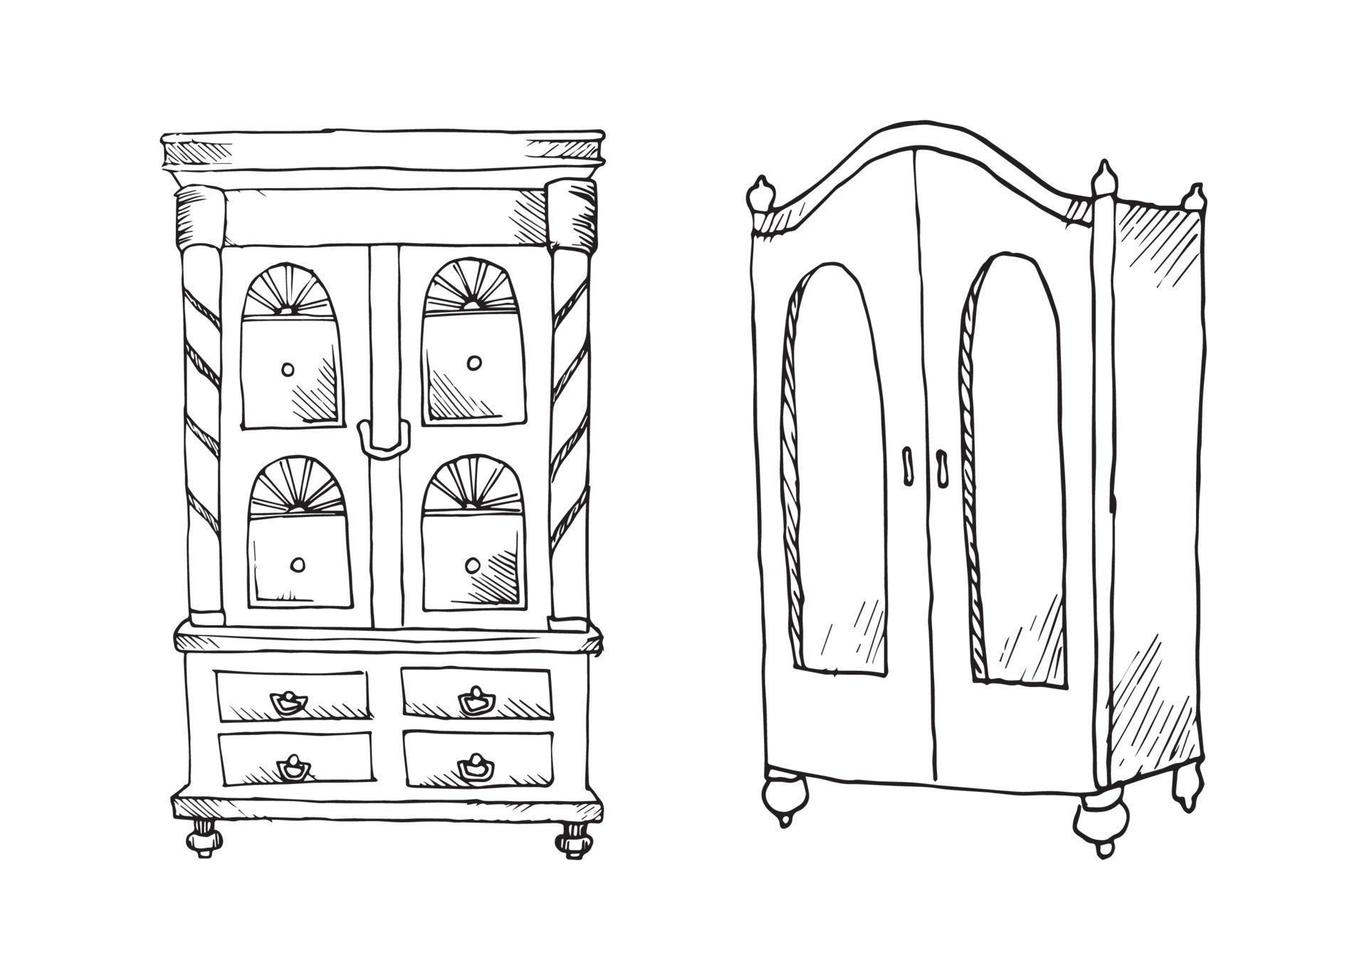 ilustrações de móveis antigos em estilo de tinta de arte vetor